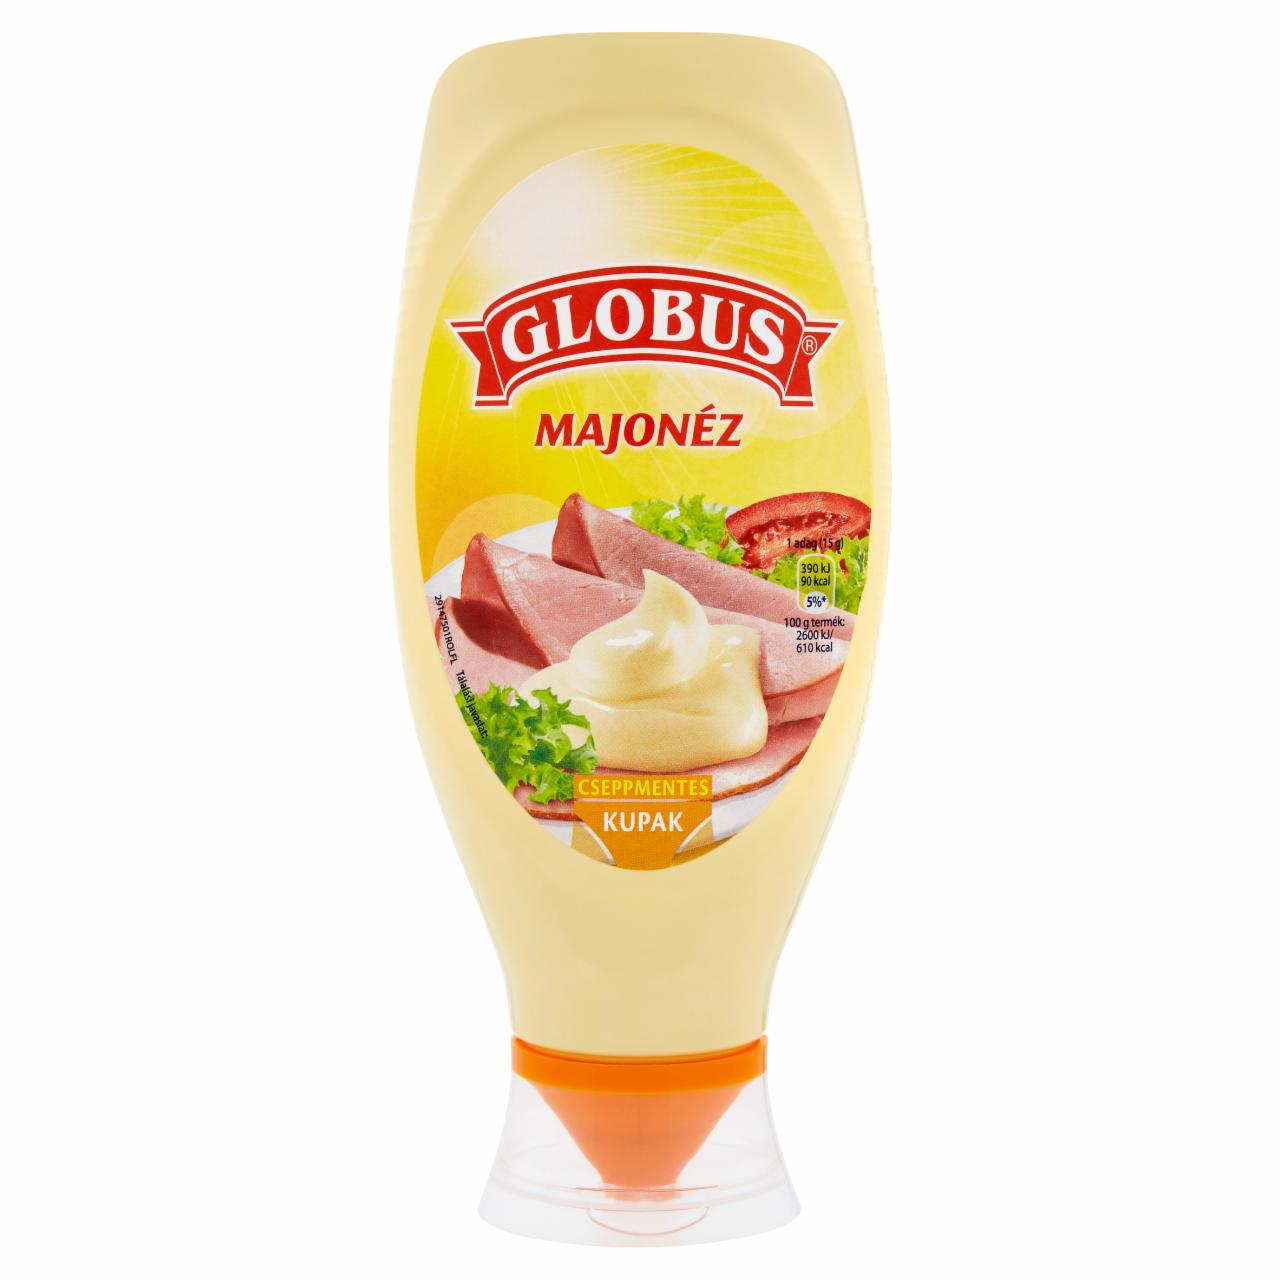 Képek - Globus majonéz 600 g